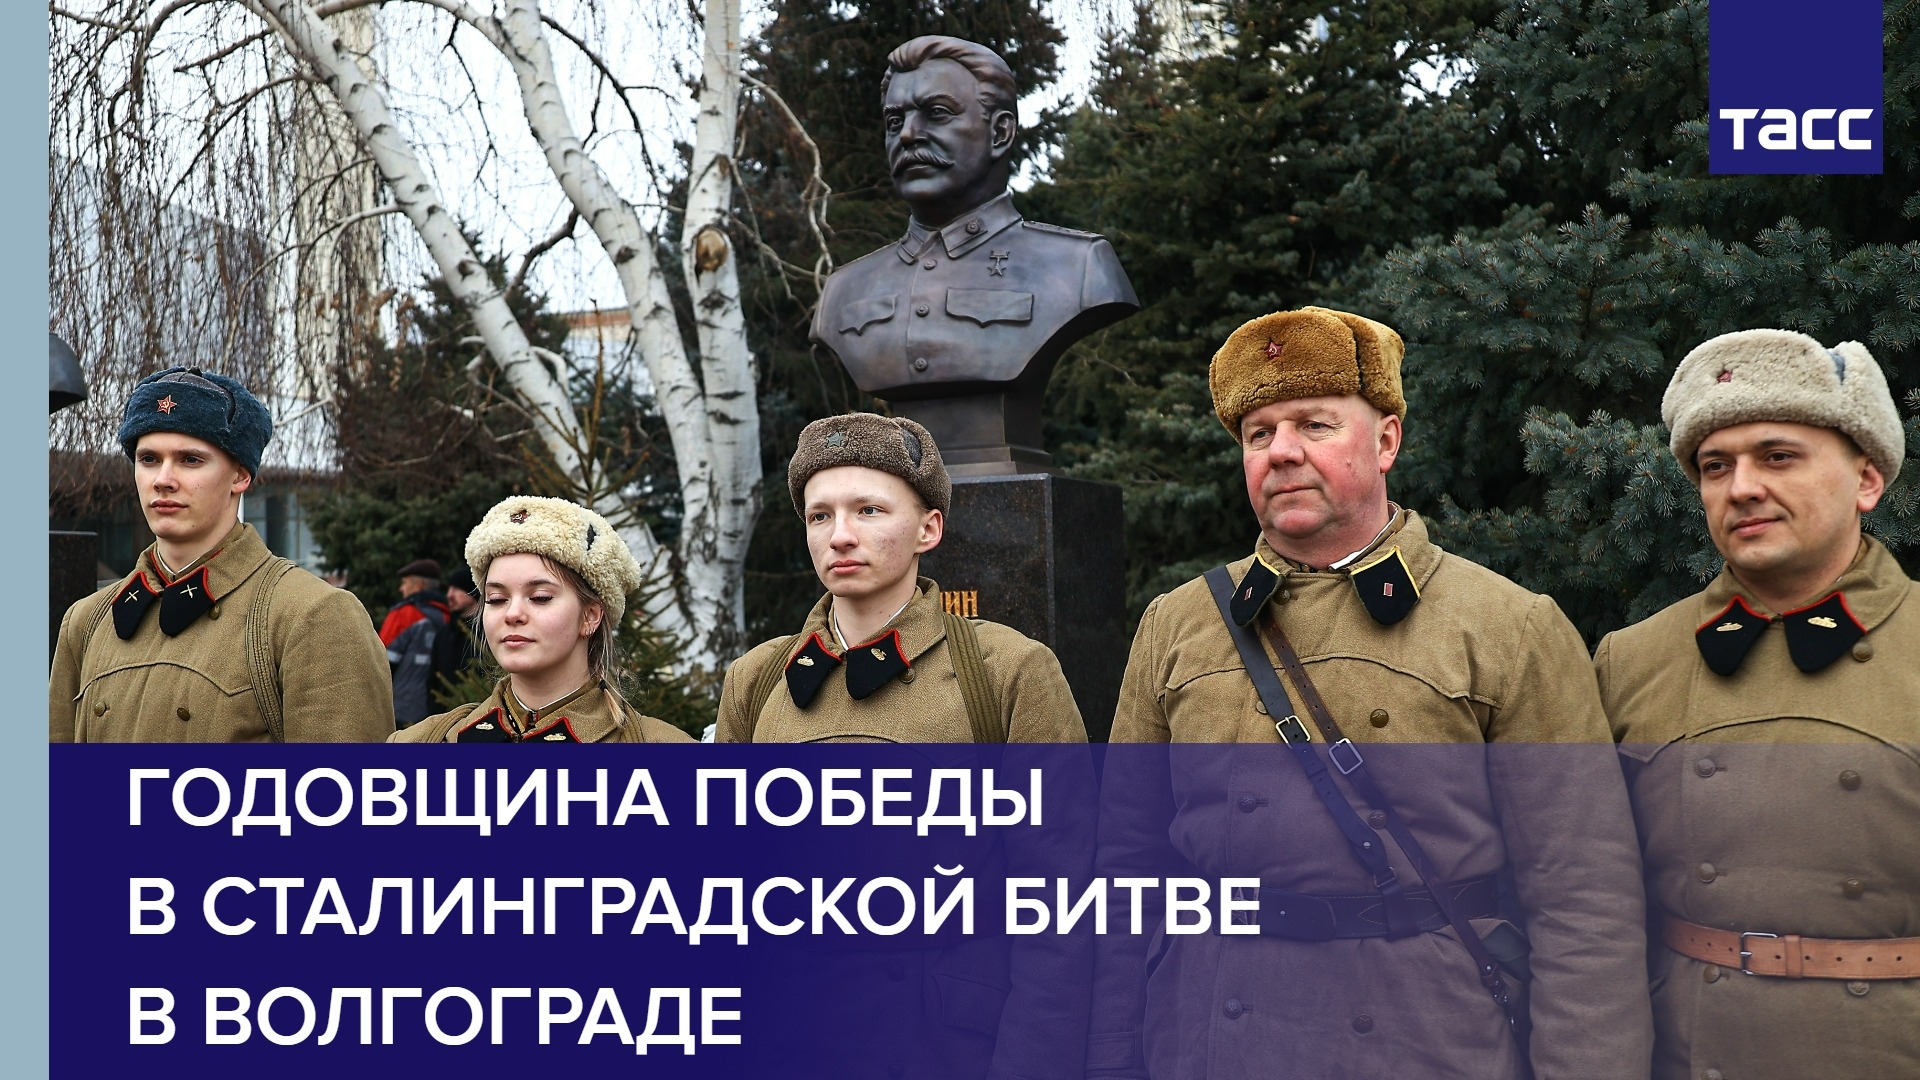 Годовщина победы в Сталинградской битве в Волгограде